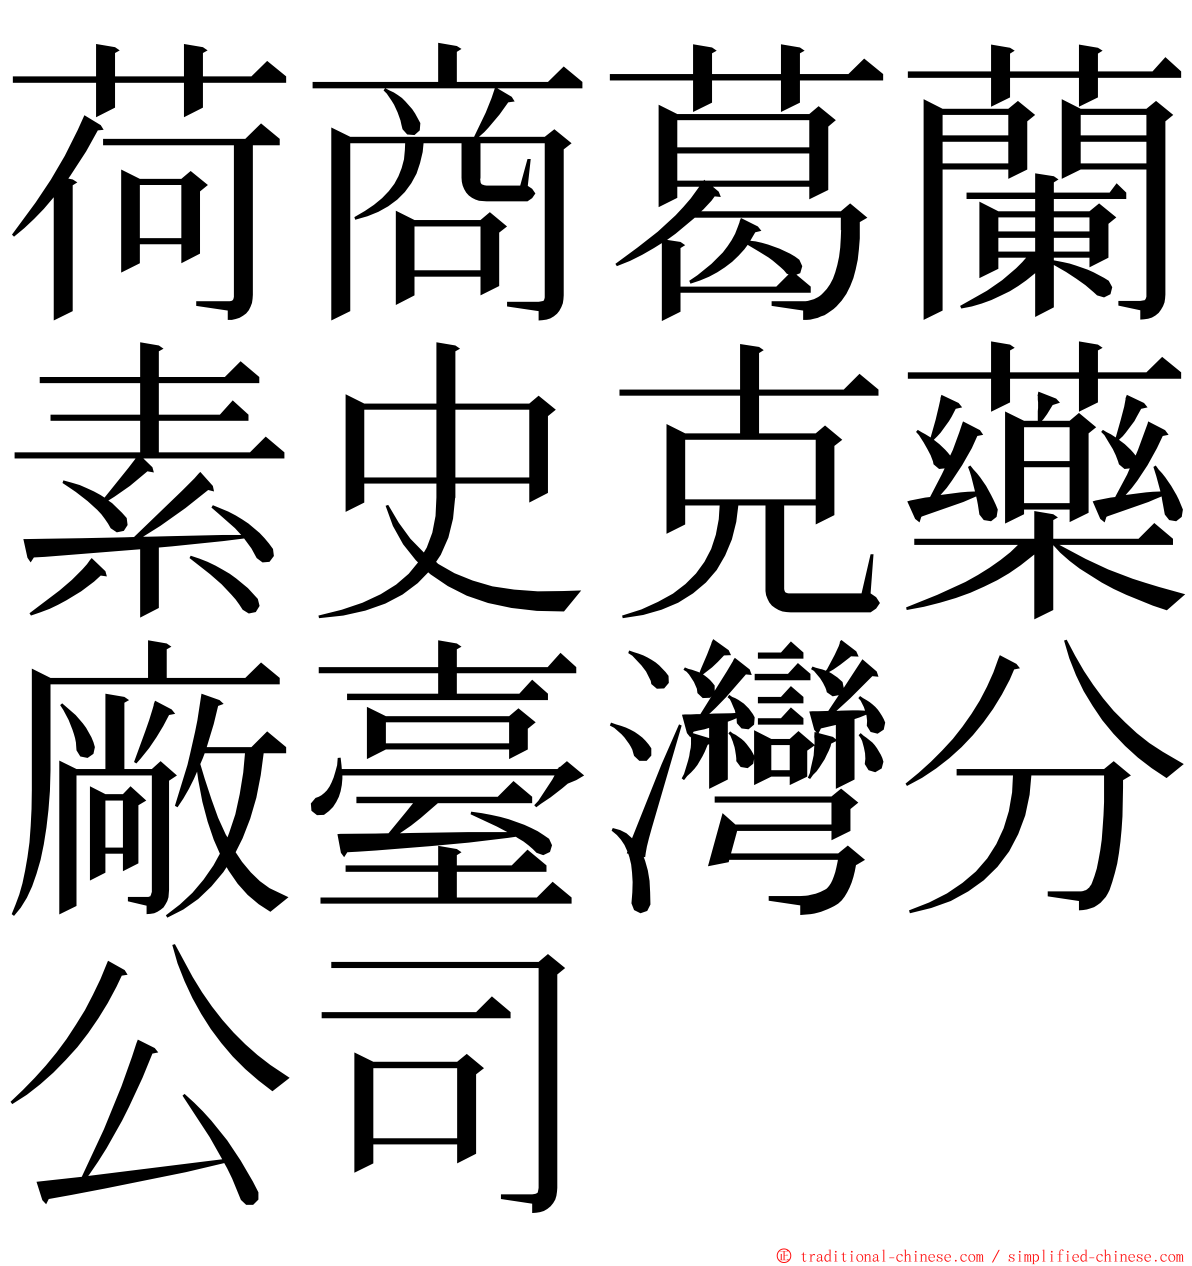 荷商葛蘭素史克藥廠臺灣分公司 ming font